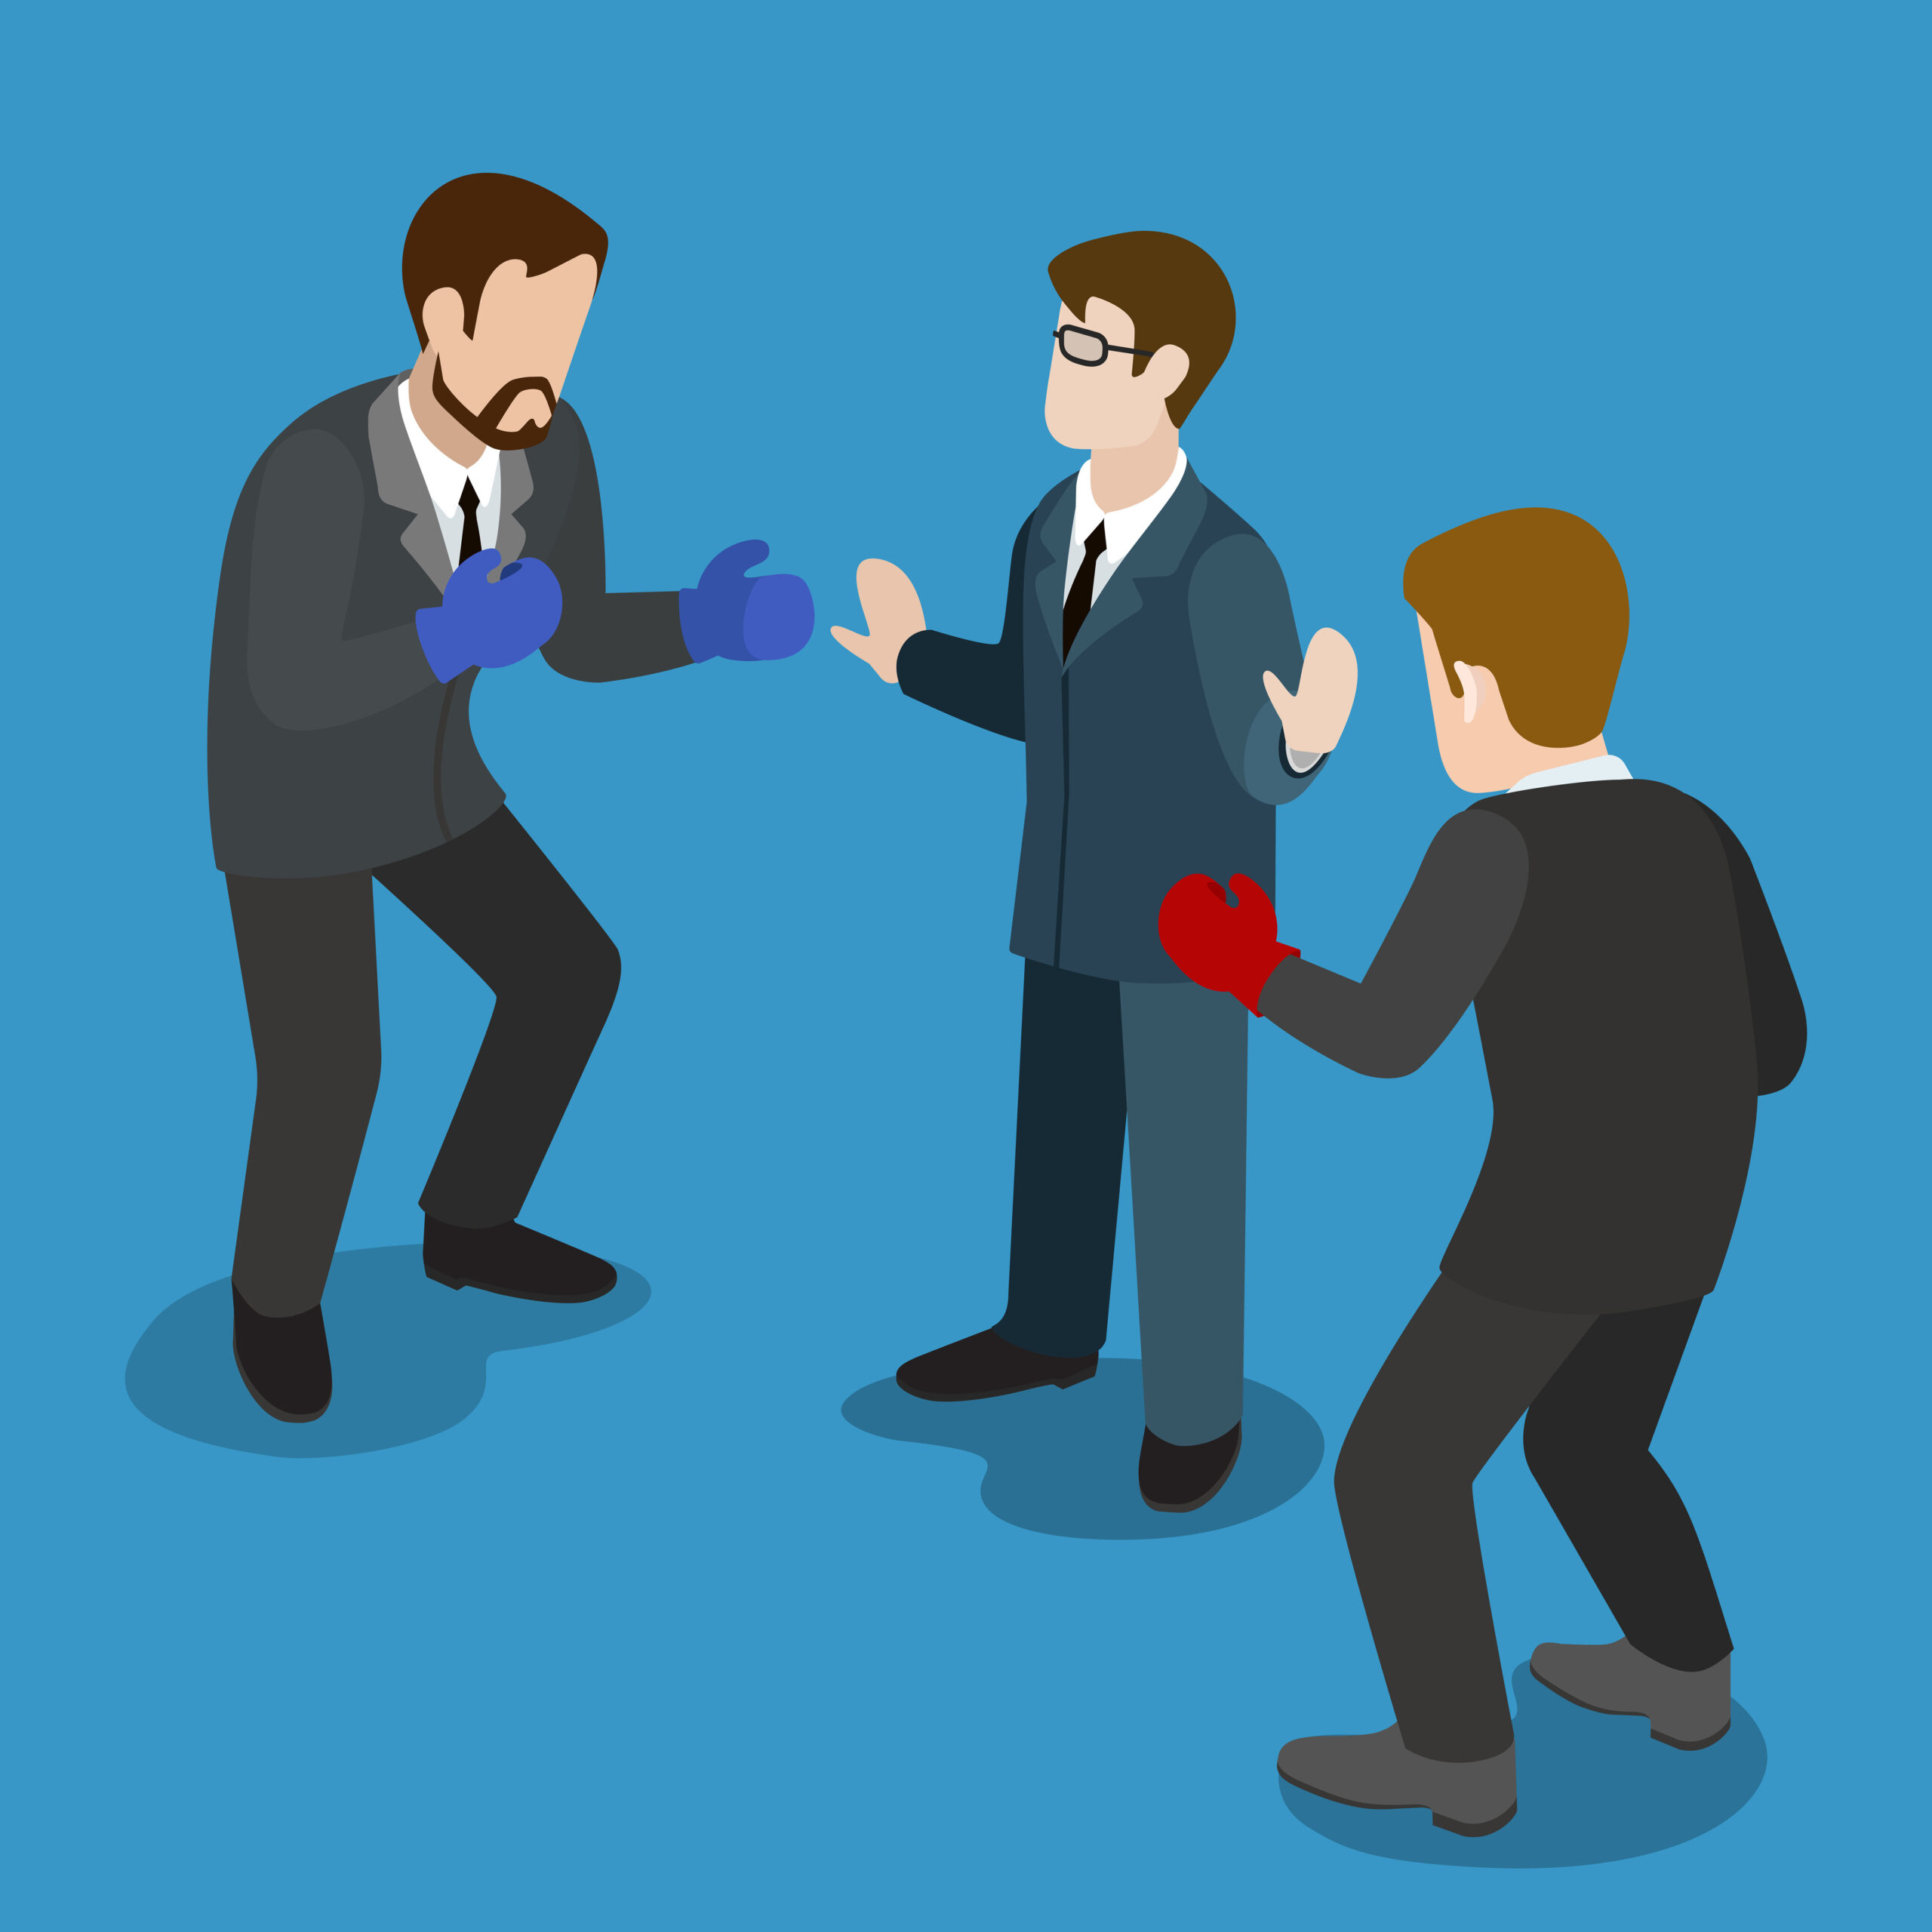 Рефери между двумя бизнесменами в боксёрских перчатках готов к бою